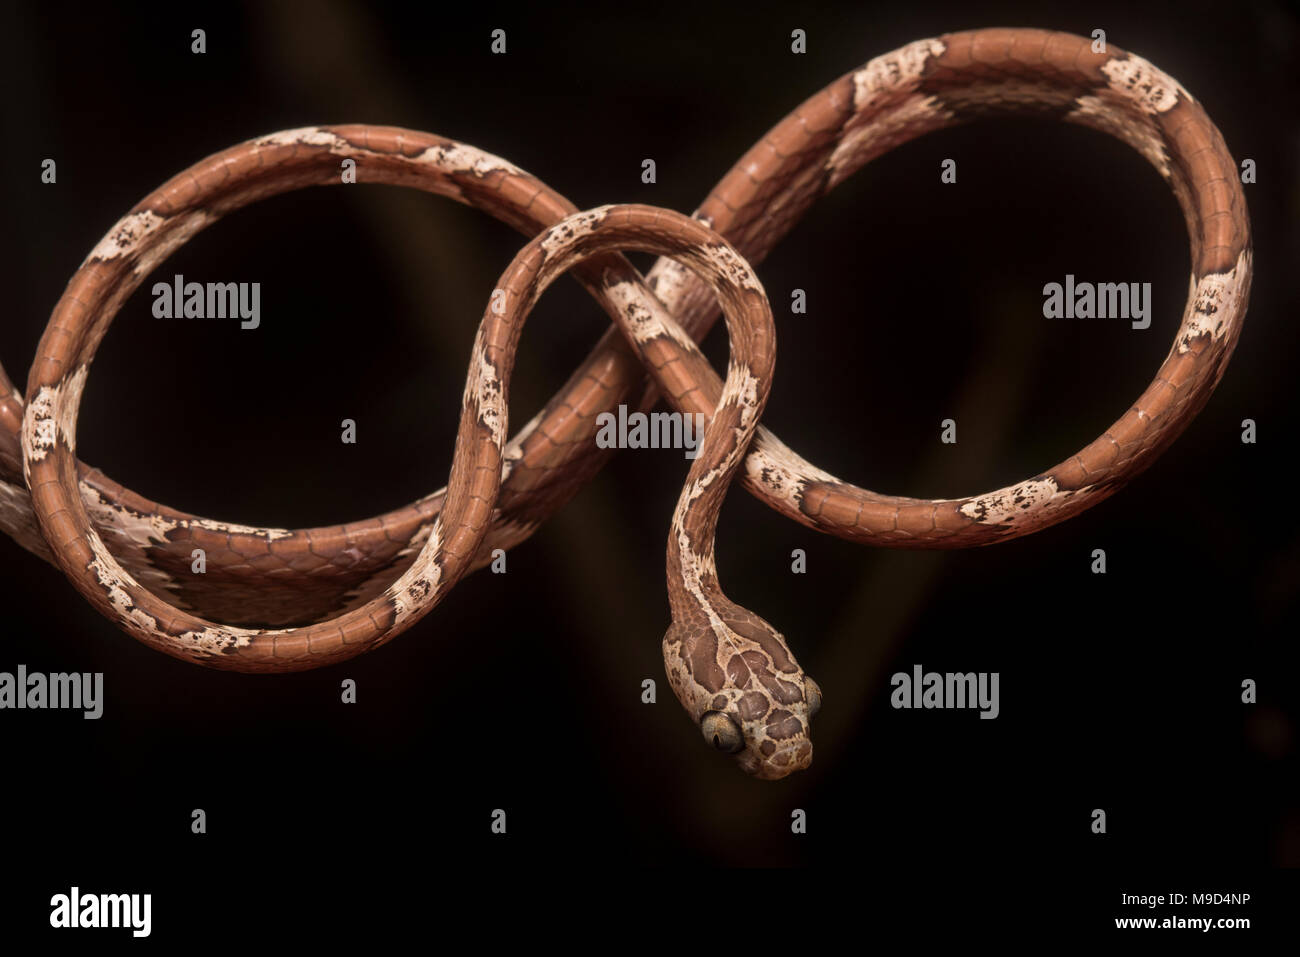 Eine stumpfe Kopf tree snake (Imantodes cenchoa) stellt natürlich in der gleichen Form als Abbildung 8 oder unendlich Loop. Stockfoto